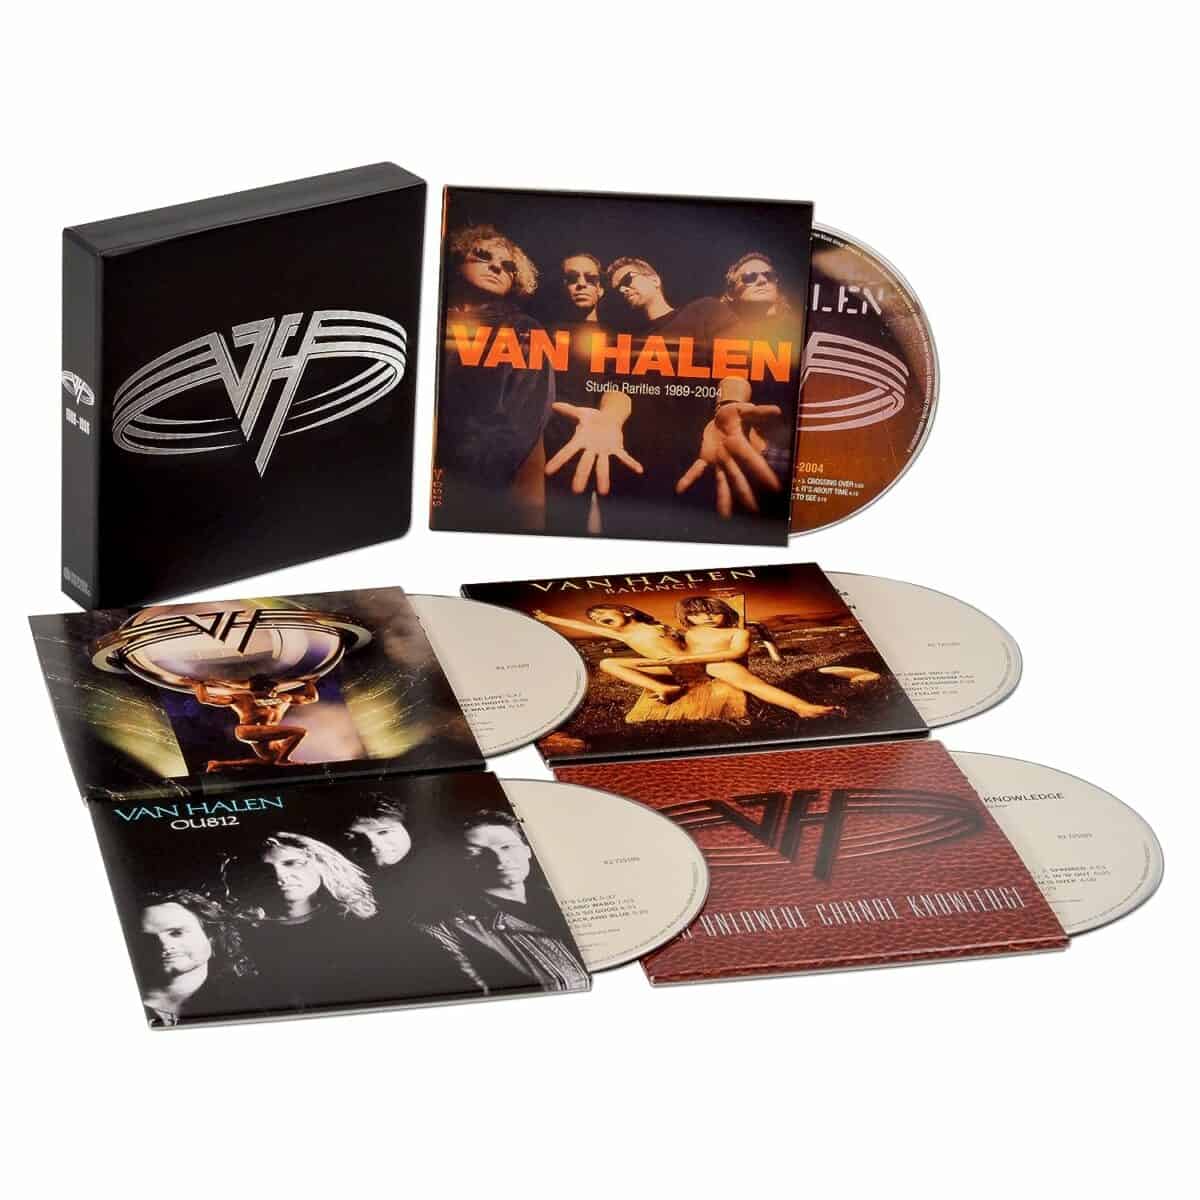 Van Halen The Collection II box set